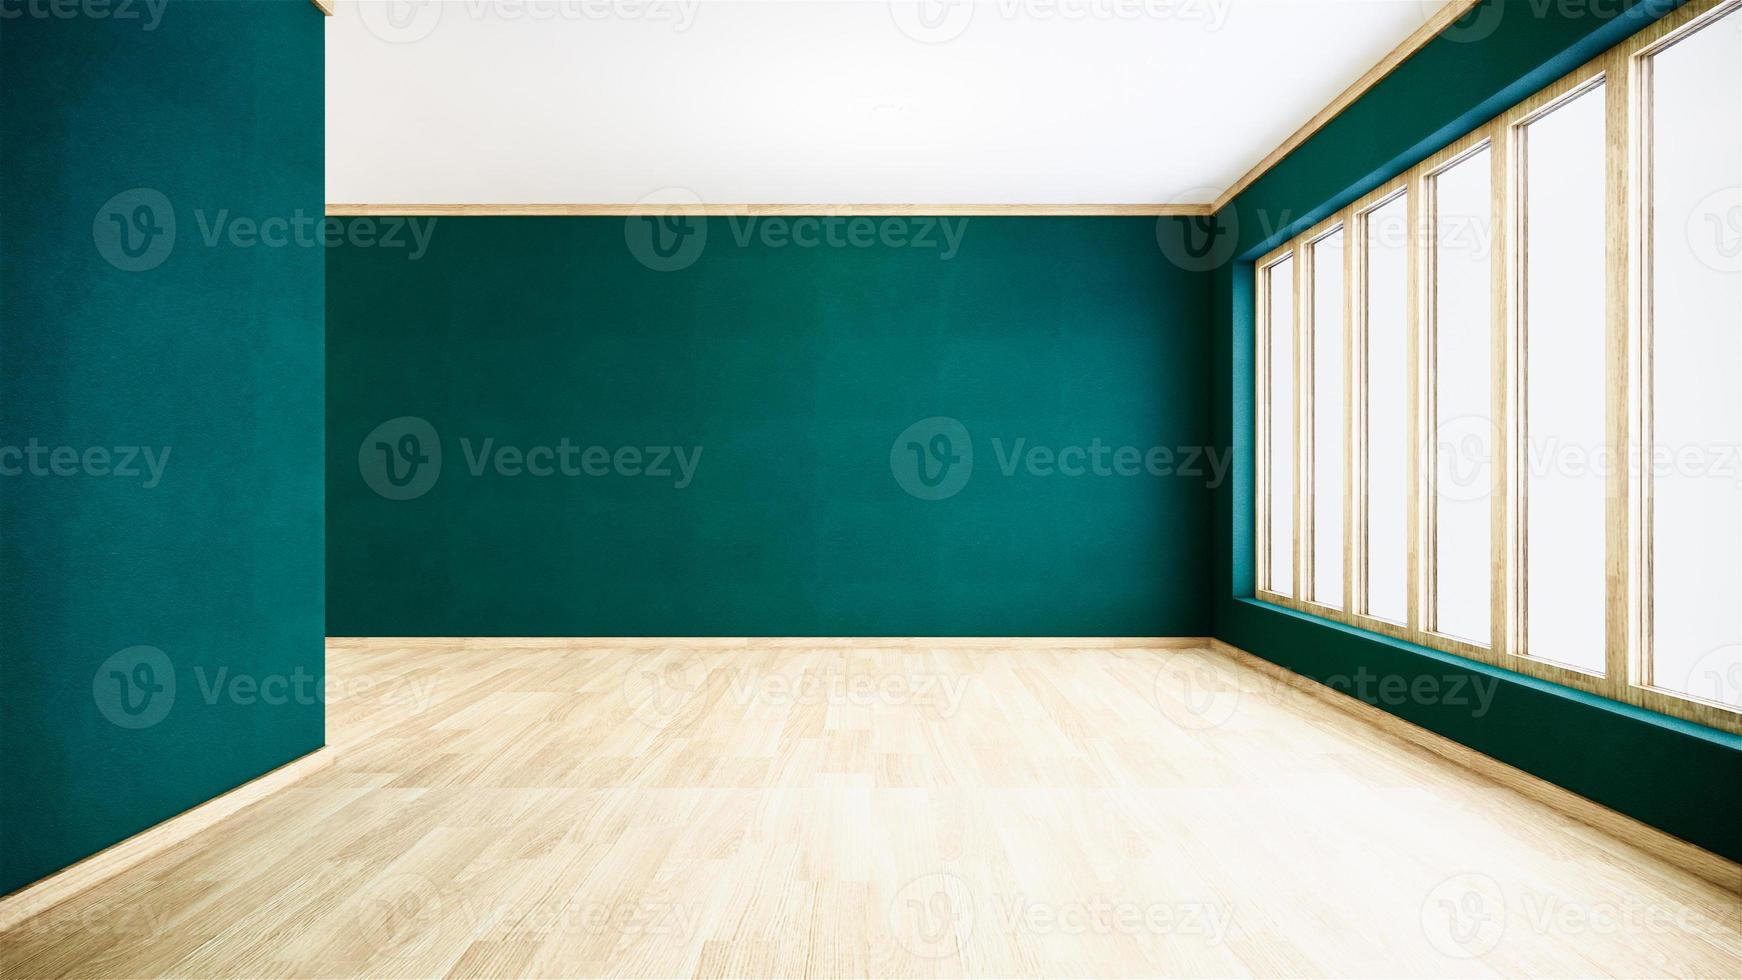 pared verde en el interior del piso de madera. Representación 3d foto